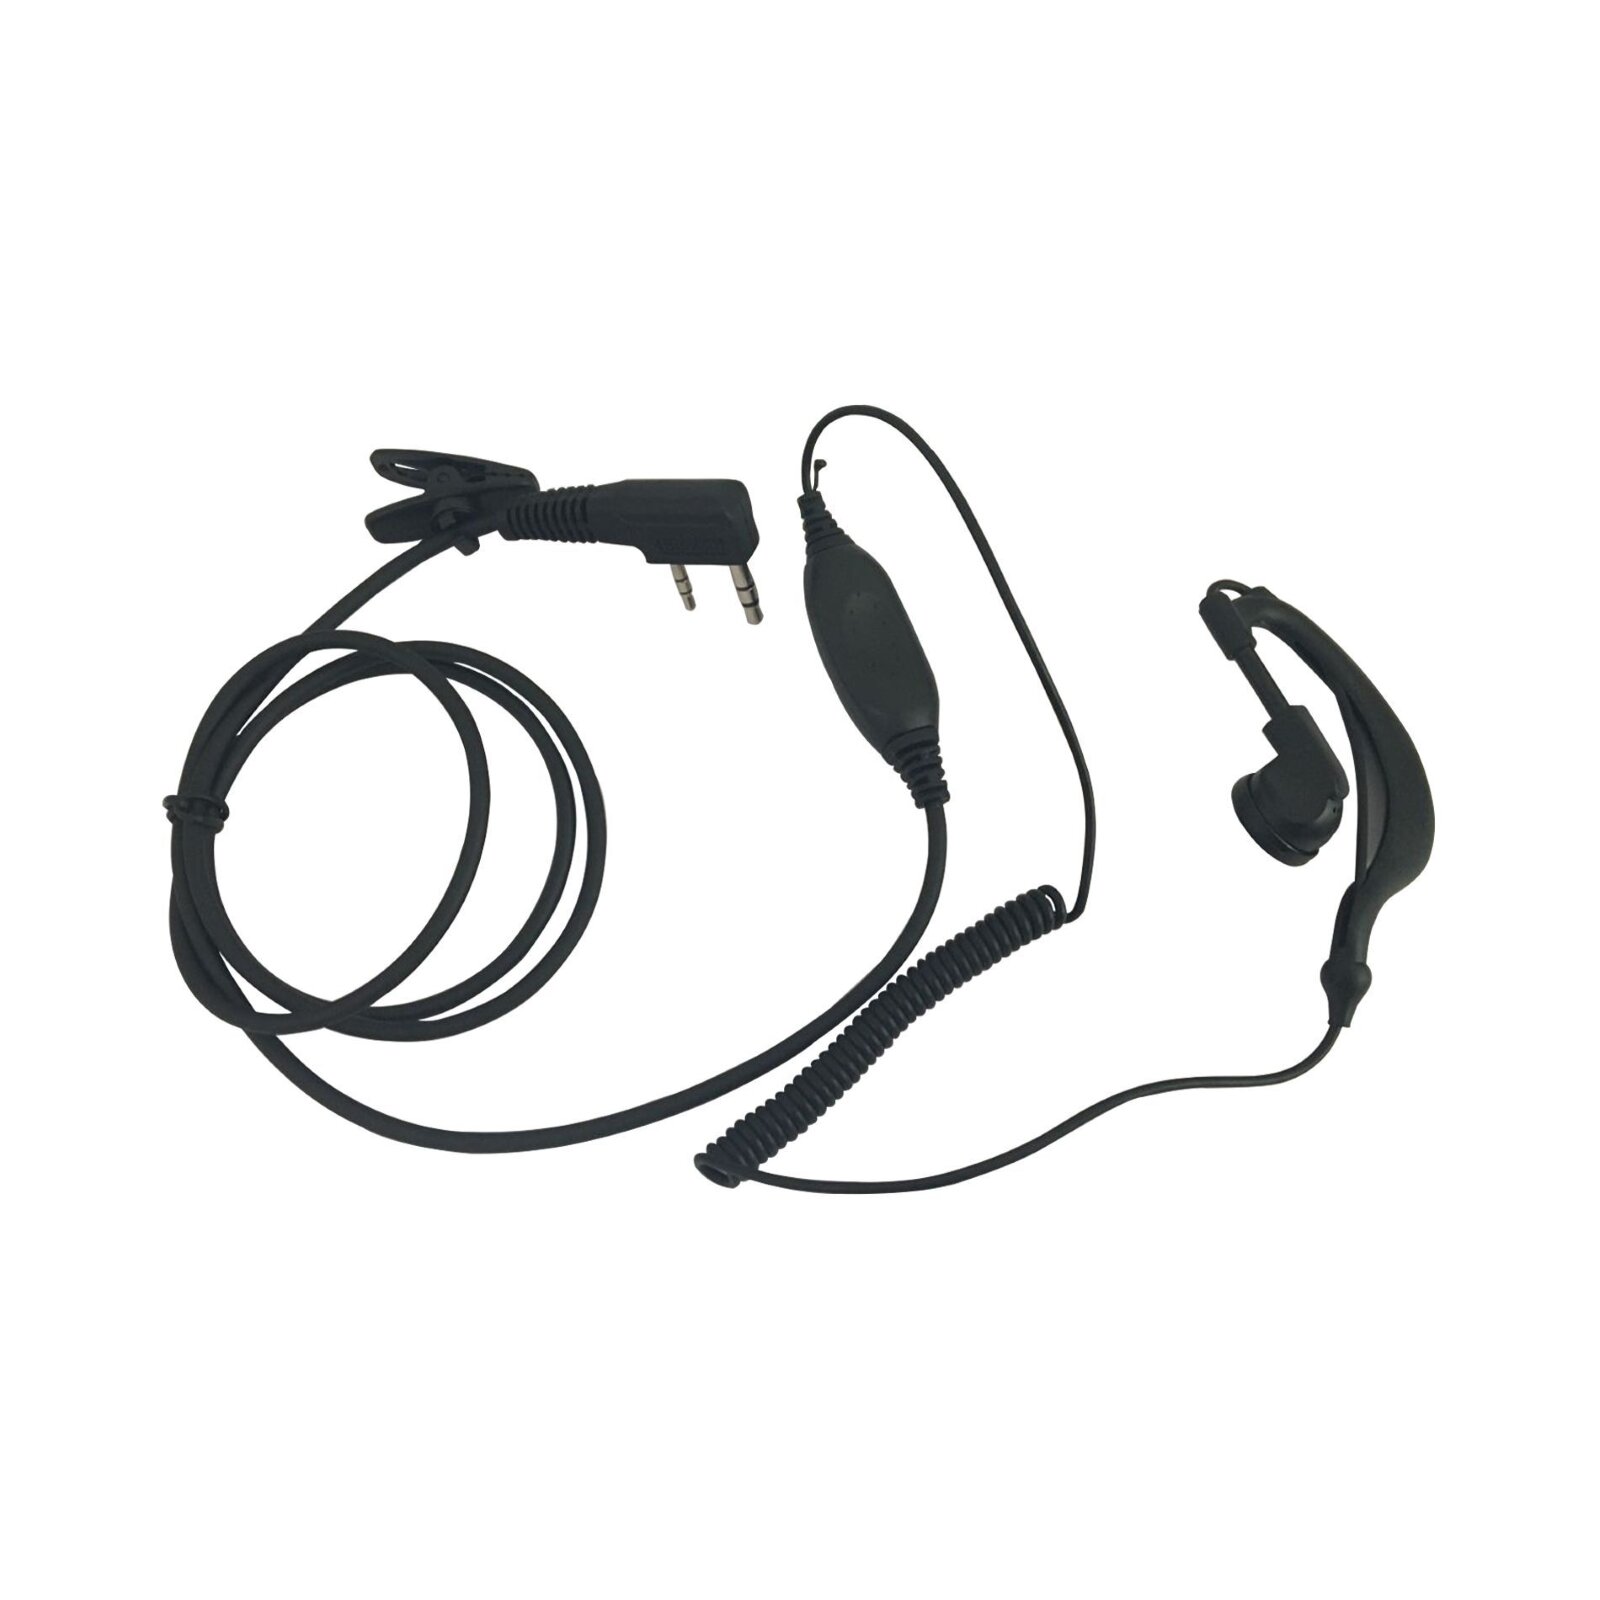 Power Acoustics In-Ear-Kopfhörer für Walkie Talkie (HS 06) : photo 1